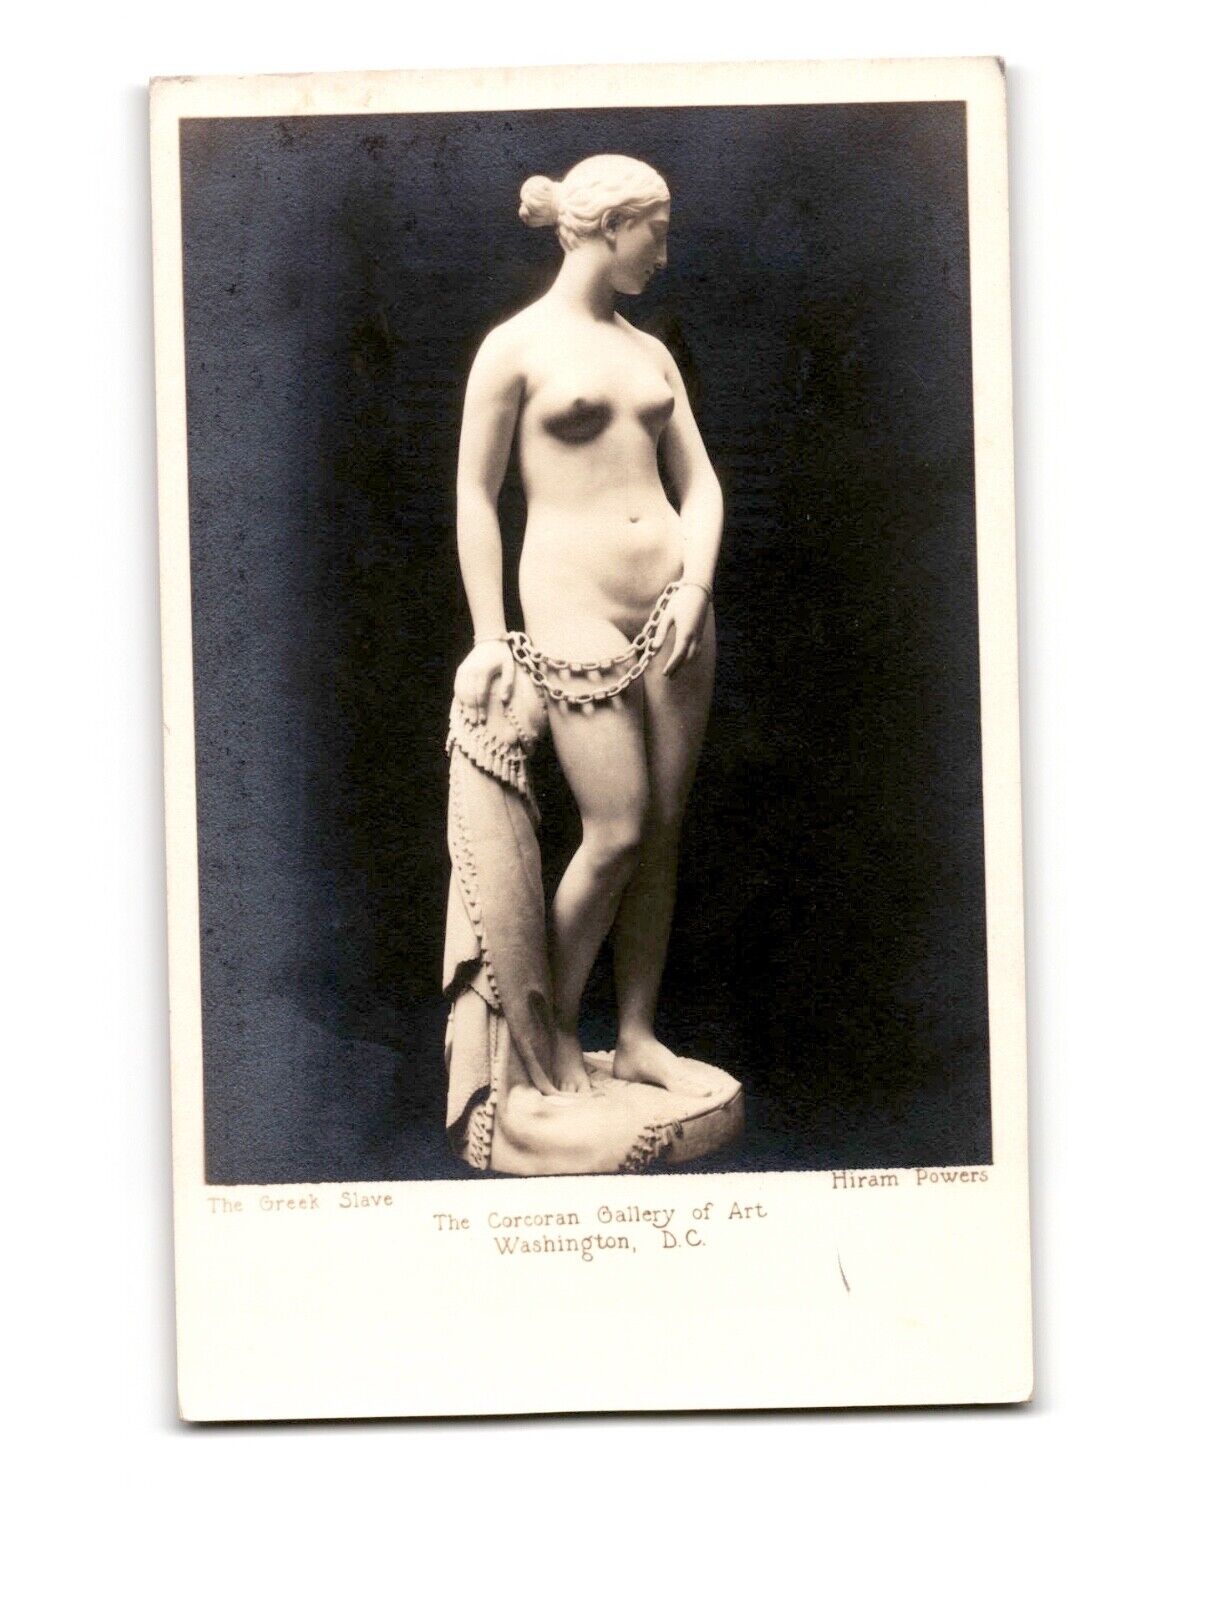 Vintage Greek Slave Postcard - Corcoran Gallery of Art - Hiram Powers